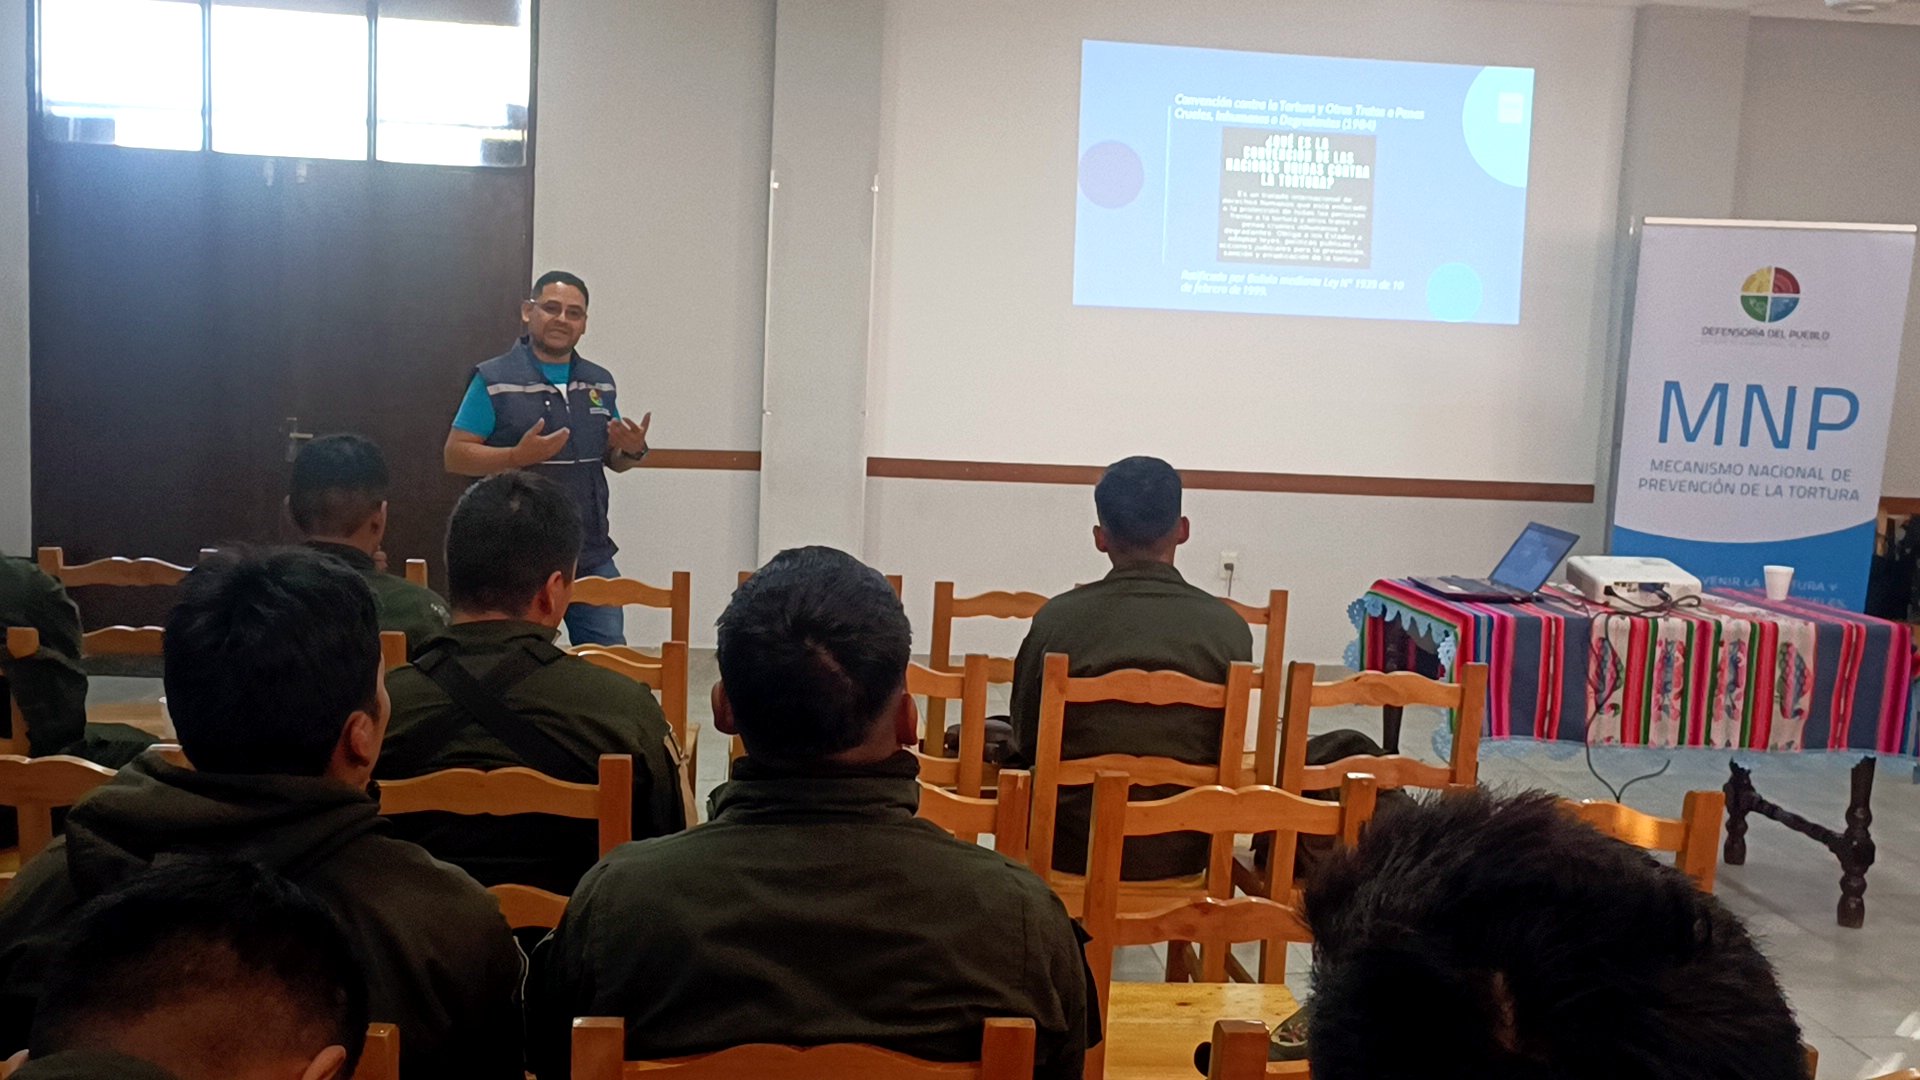 Delegación Defensorial de Tarija capacita a efectivos policiales en prevención de la tortura en el Recinto Penitenciario de Morros Blancos